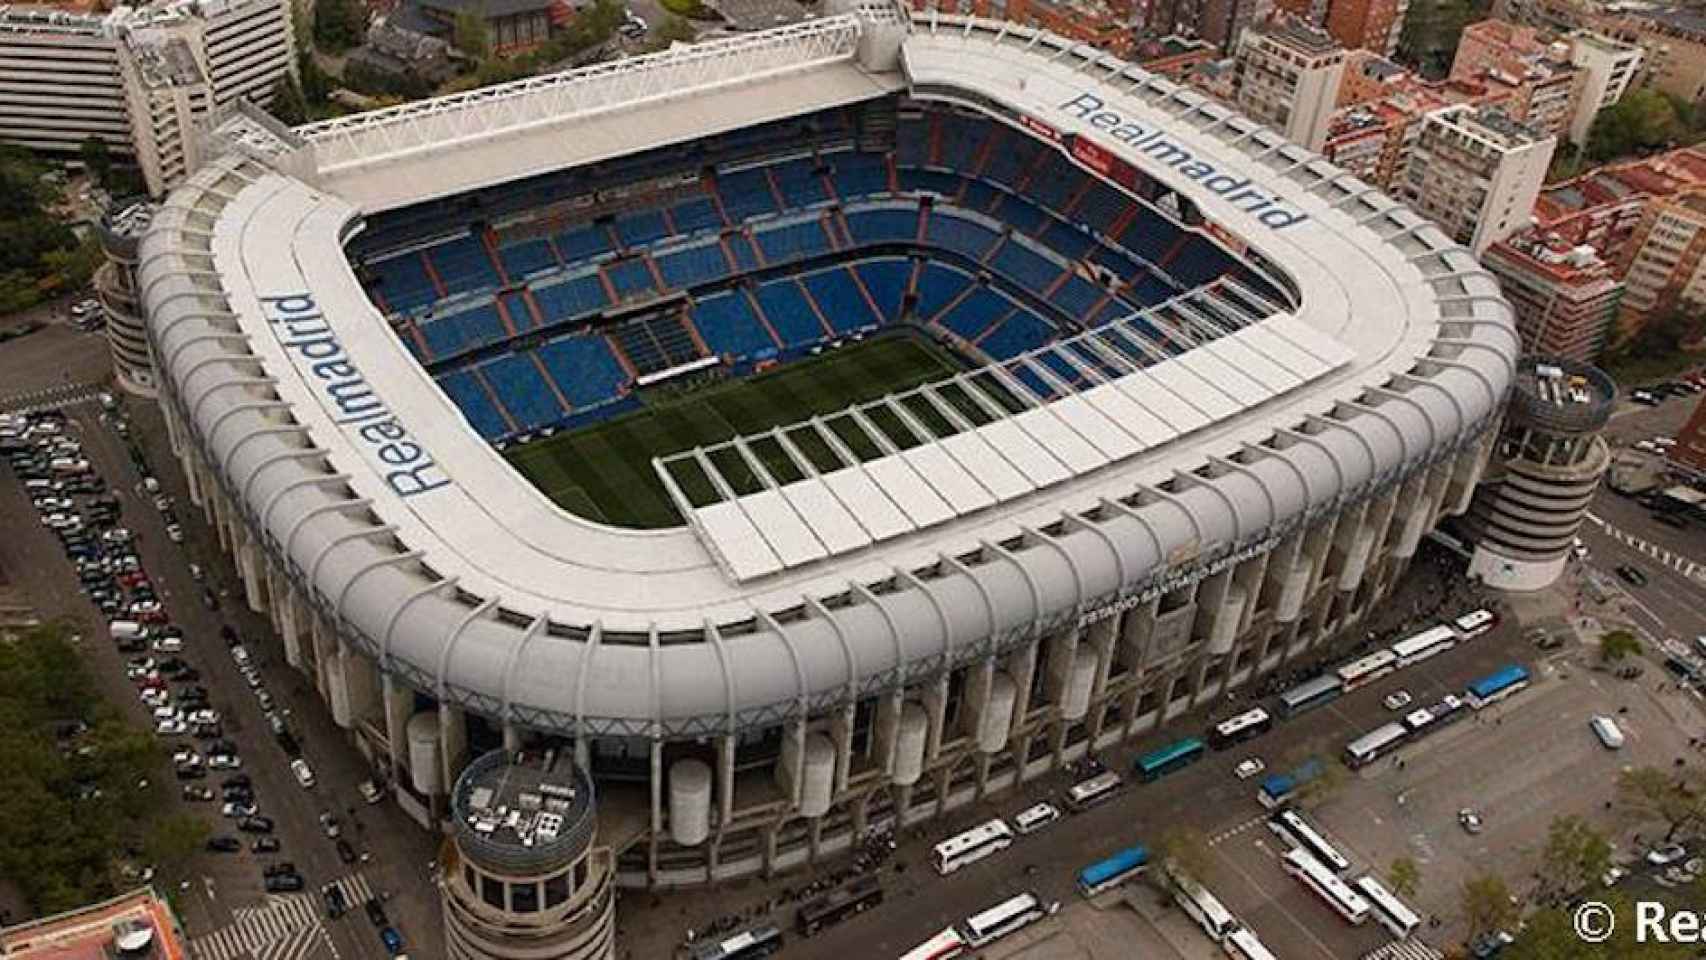 Una foto del Santiago Bernabéu, estadio del Real Madrid / Twitter